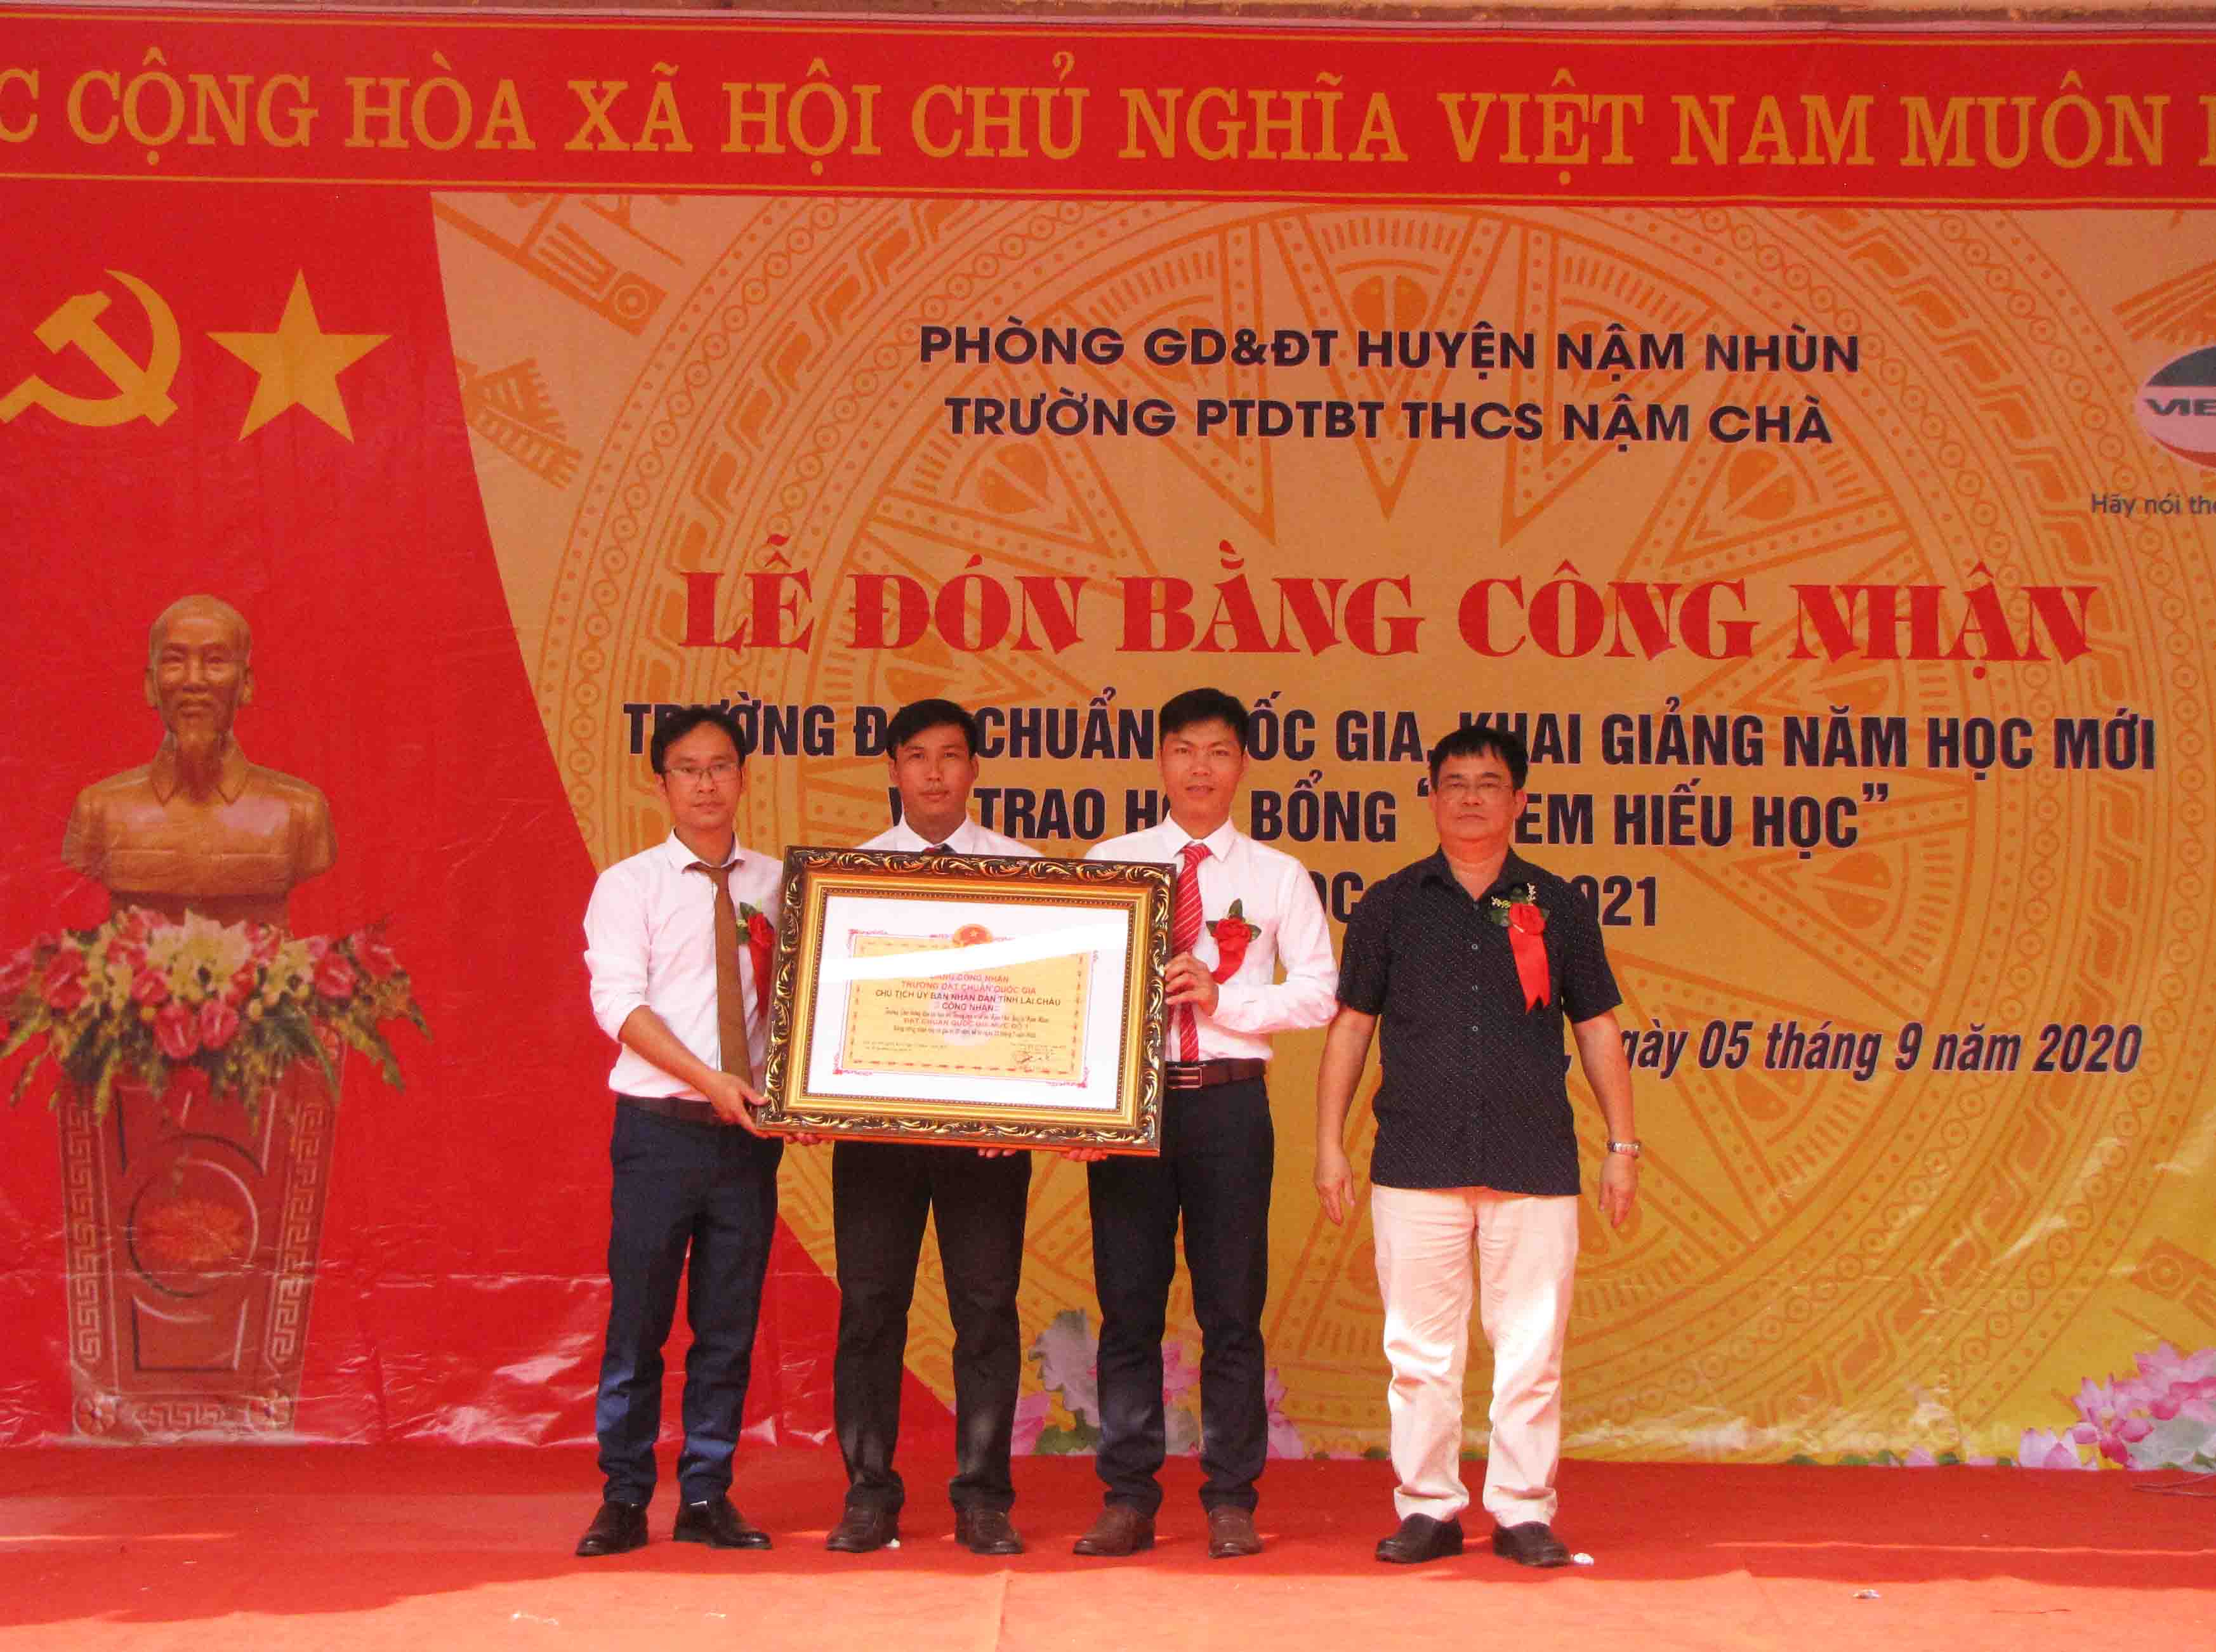 Trường PTDTBT THCS Nậm Chà (xã Nậm Chà, huyện Nậm Nhùn) đón bằng công nhận đạt chuẩn Quốc gia mức độ 1.